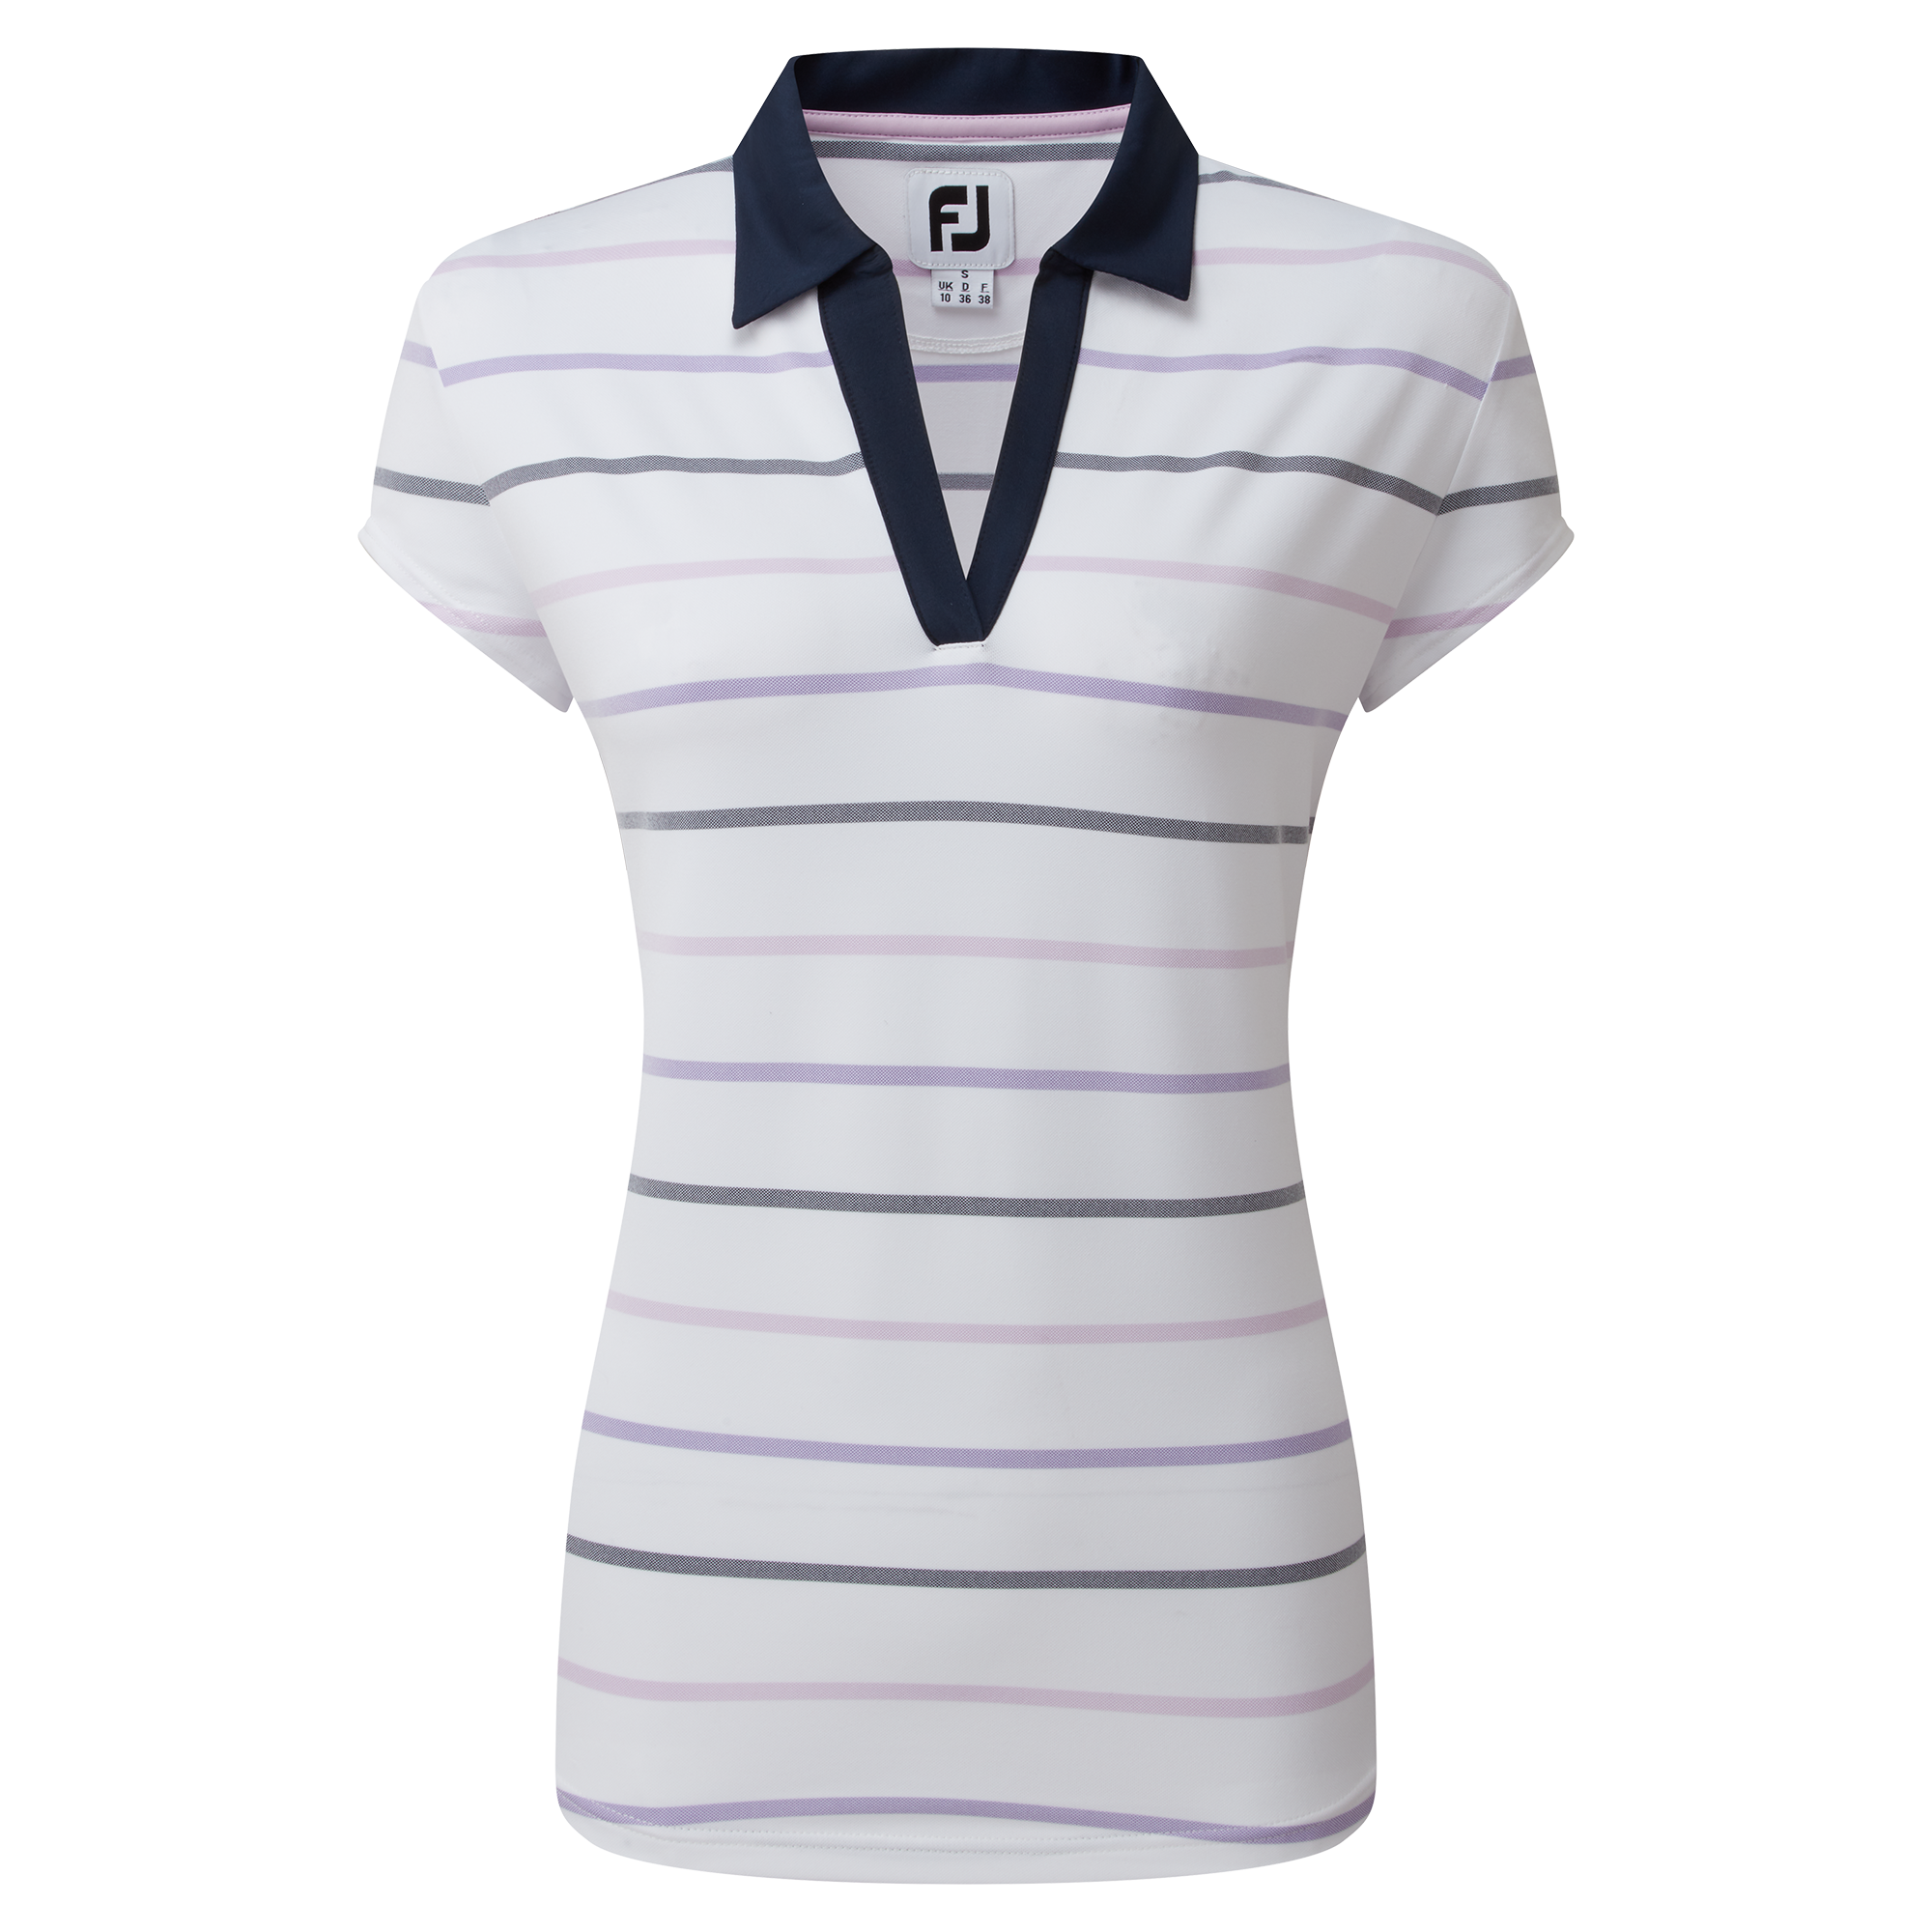 FootJoy Birdseye Stripe Smooth Jacquard dámské golfové triko, bílé